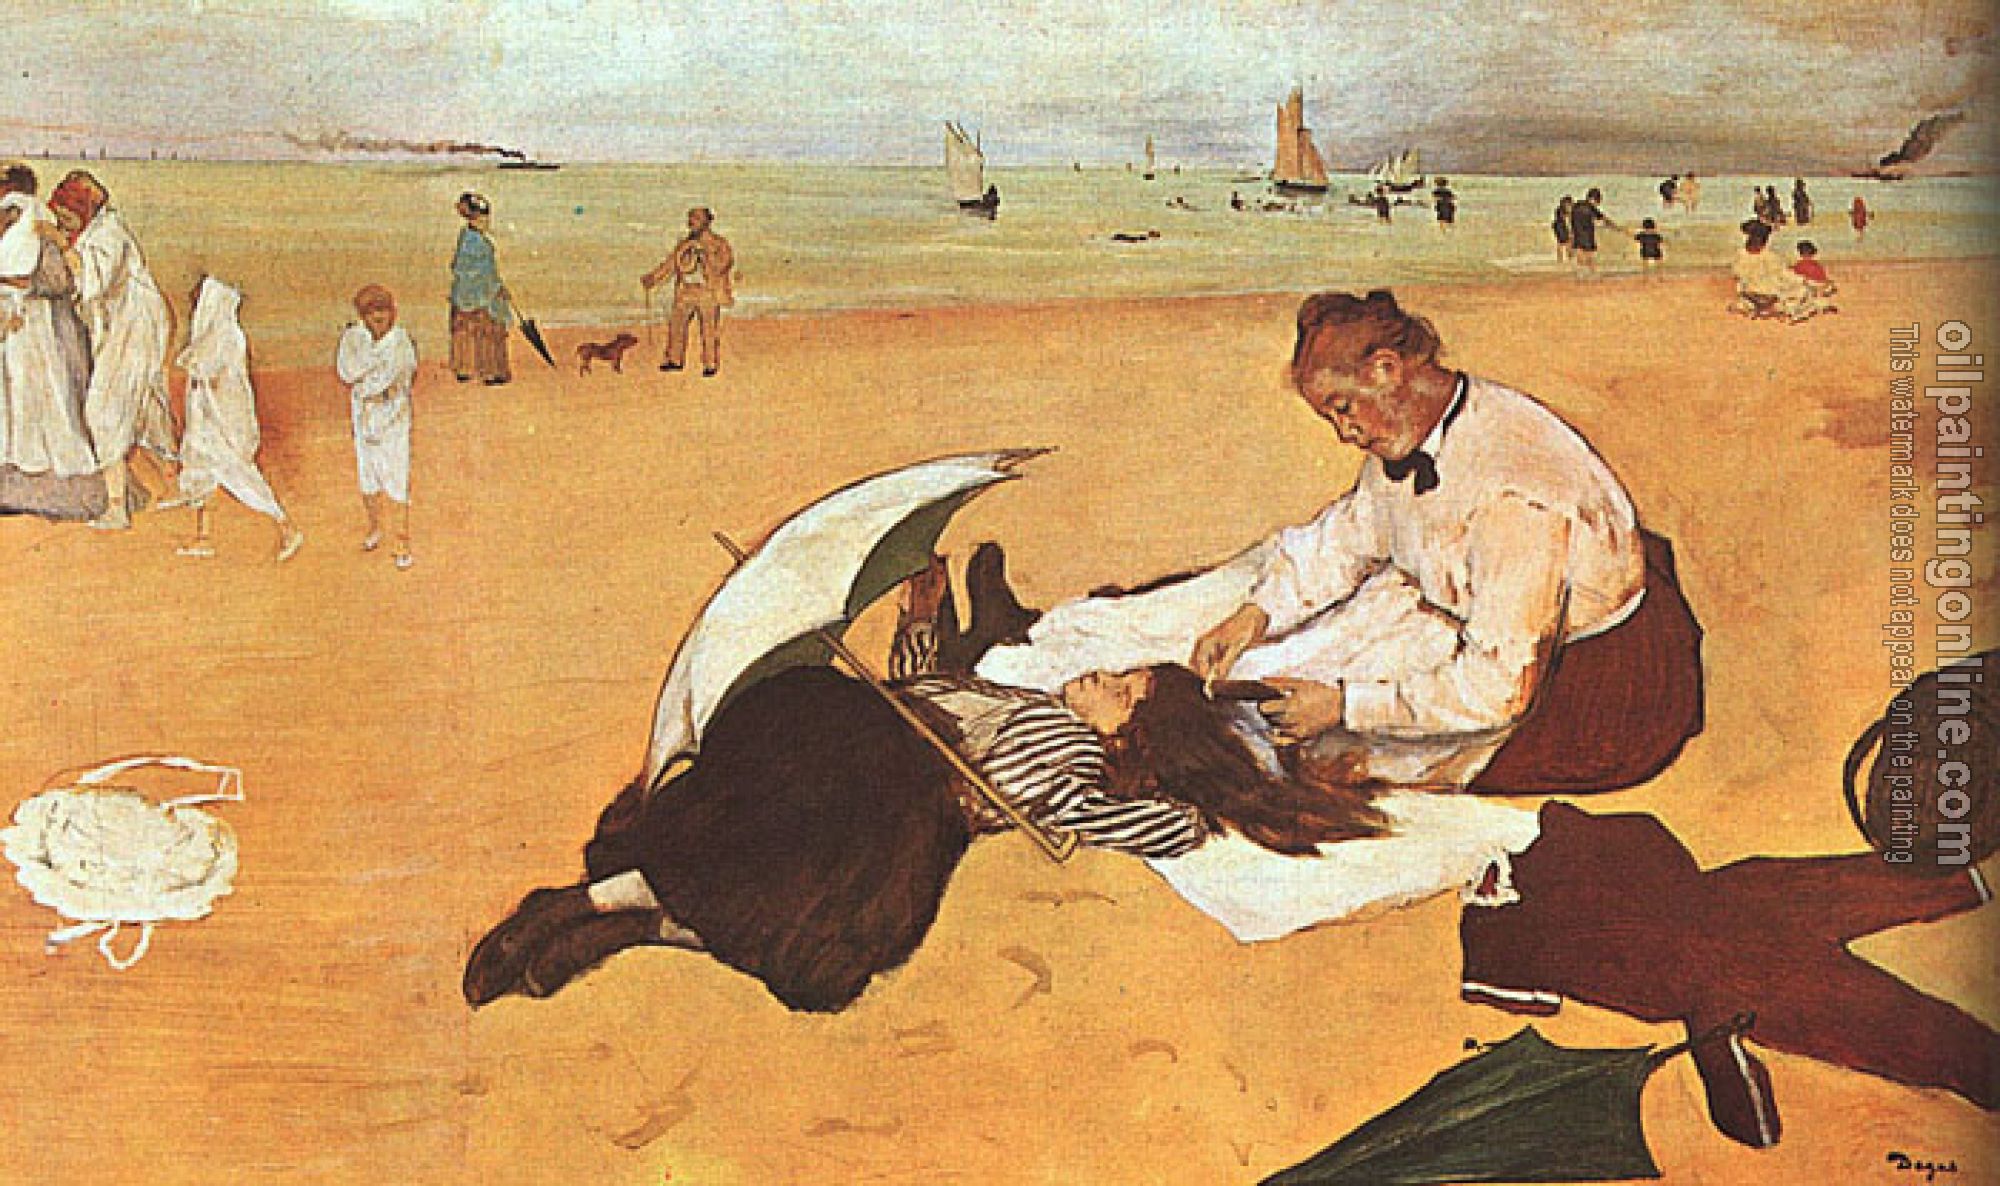 Degas, Edgar - At the Beach